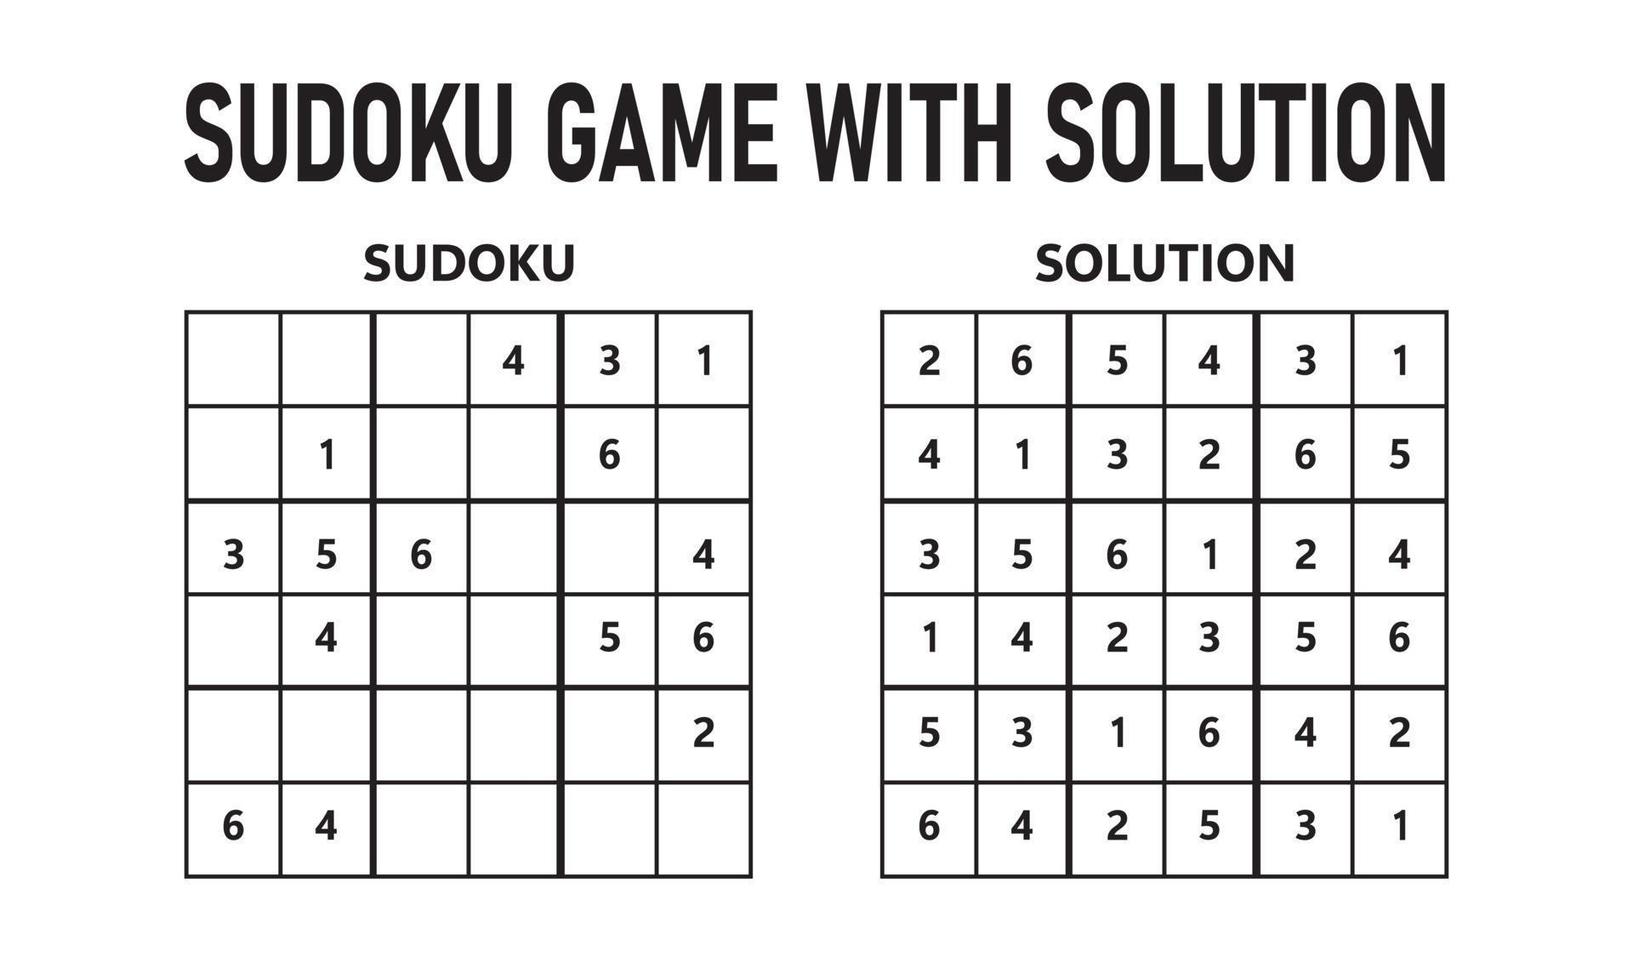 Juego de sudoku con solución. juego de rompecabezas sudoku con números. se puede utilizar como un juego educativo. rompecabezas de lógica para niños o juego de ocio para adultos. vector